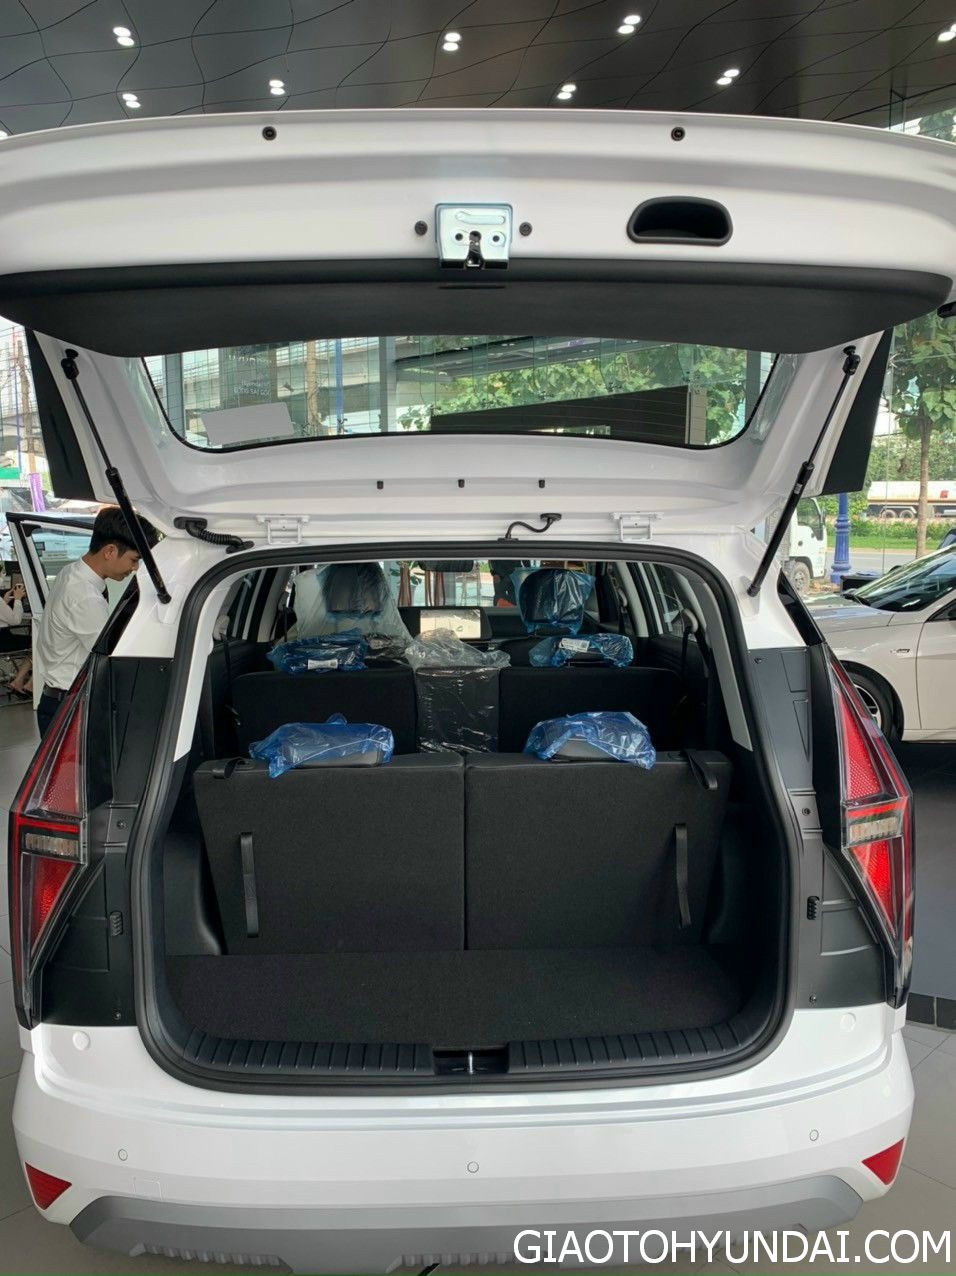 Khoang hành lý trên Hyundai Stargazer 2023 có dung tích 200 lít trên tất cả phiên bản